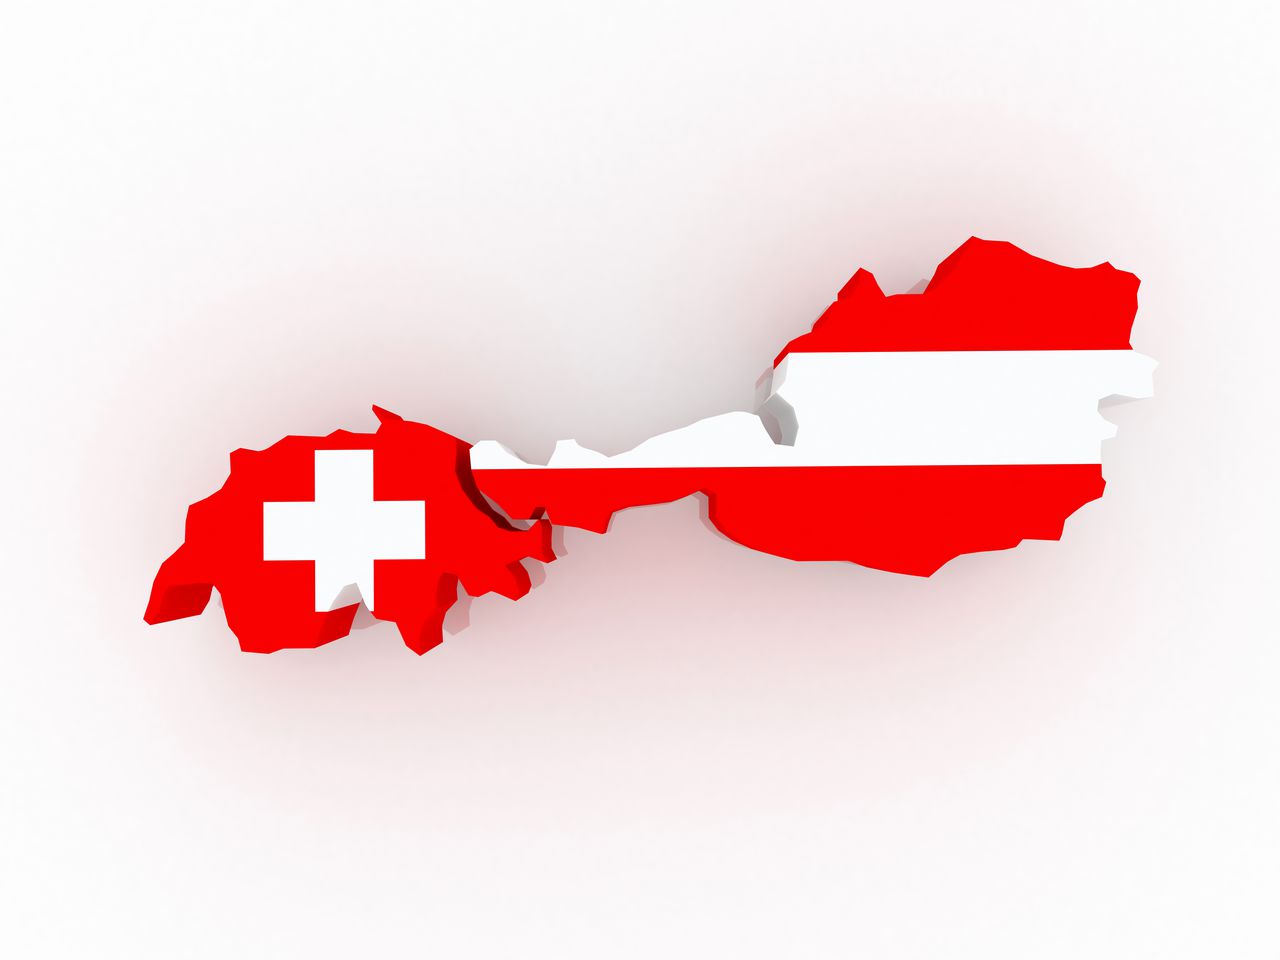 Karte Schweiz/Österreich jeweils in Landesfarben